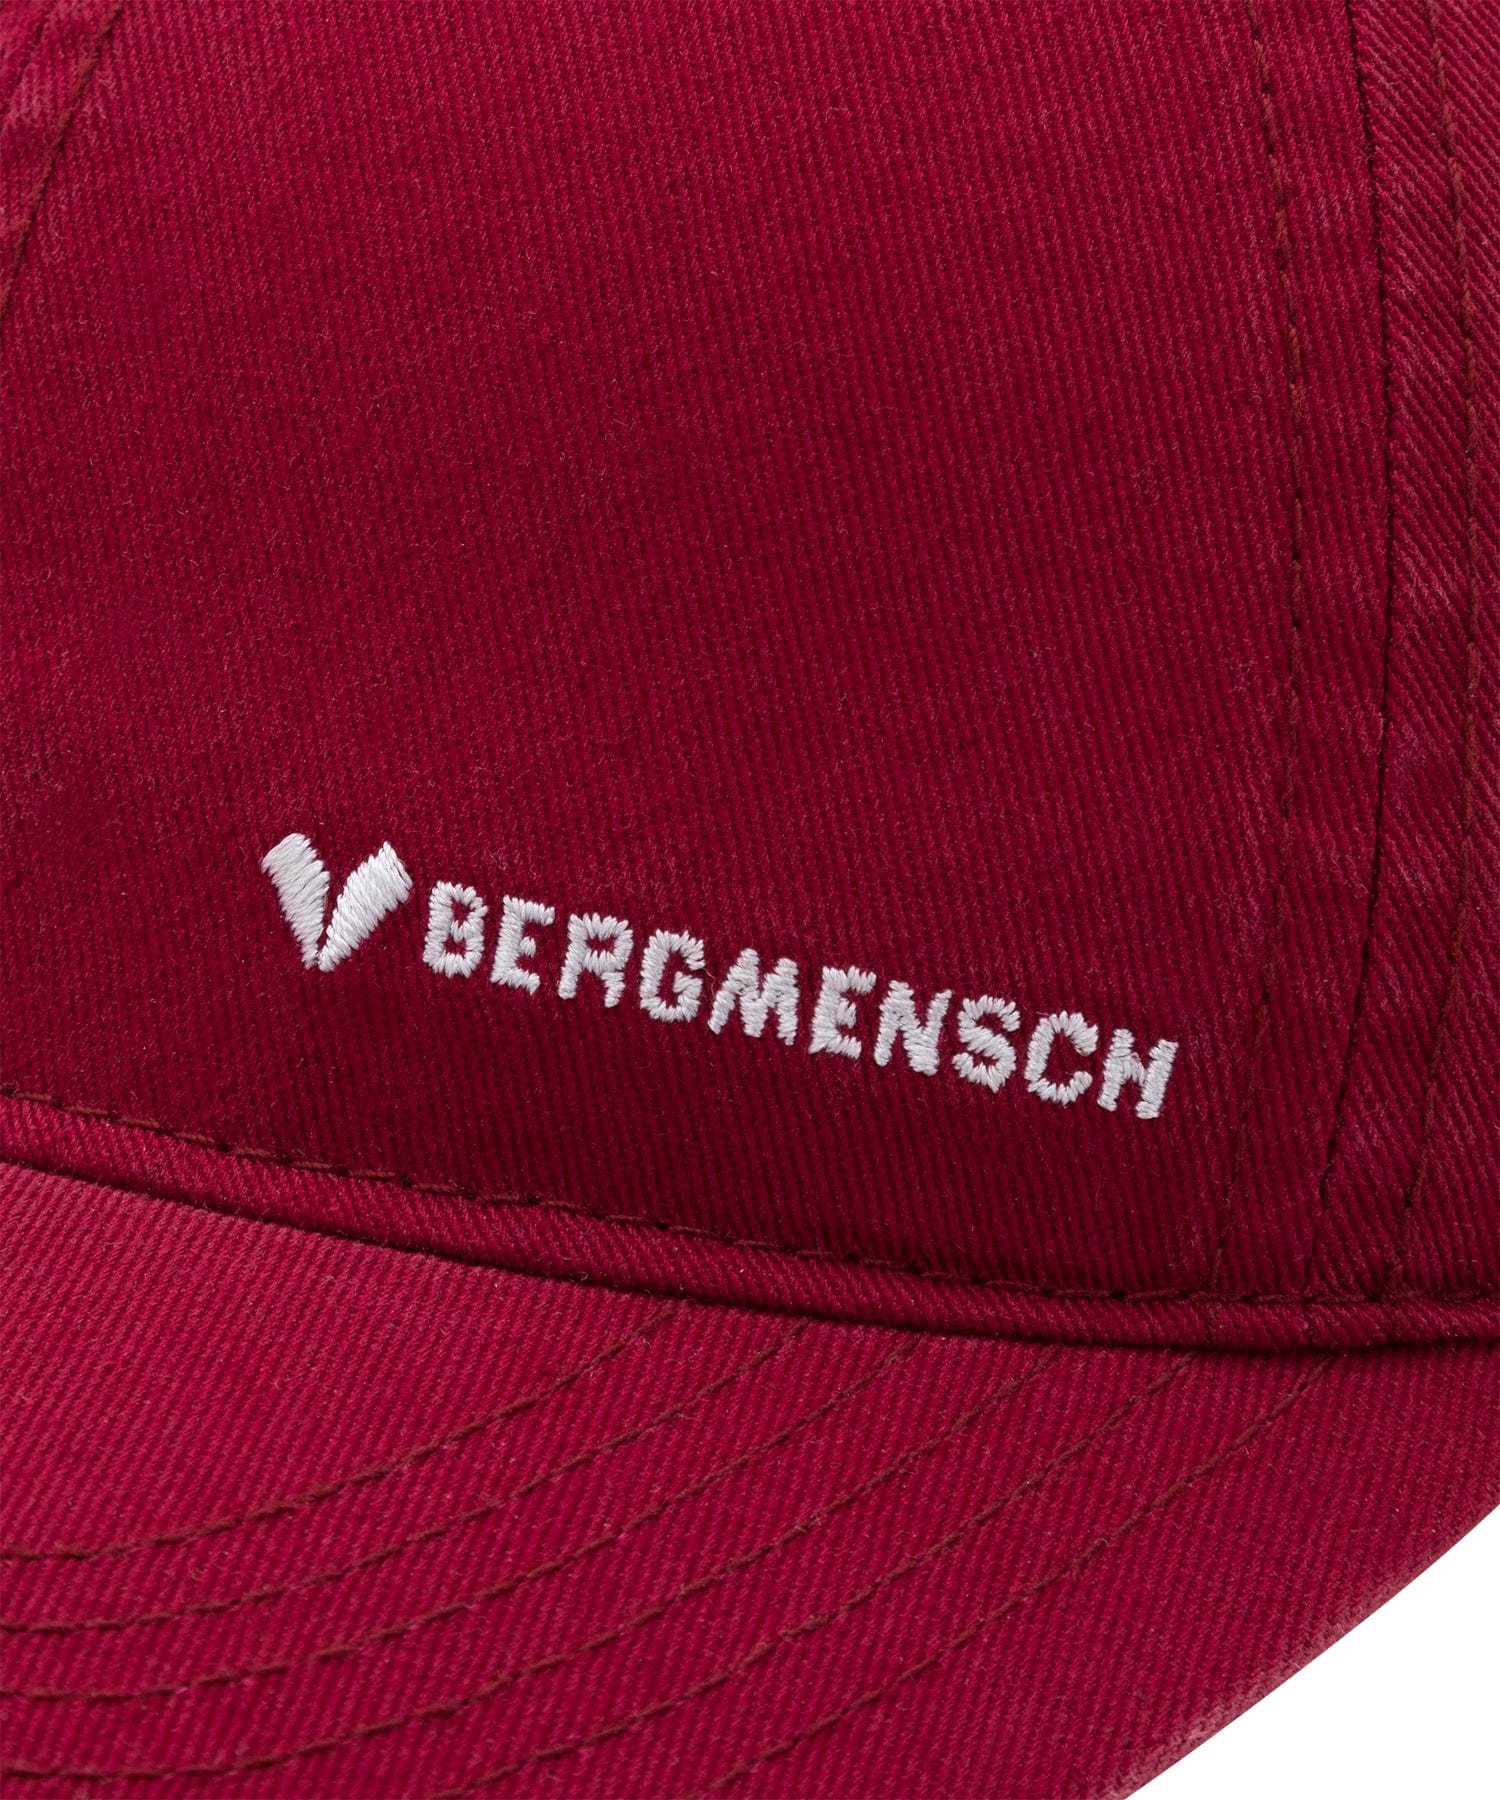 BERGMENSCH® Organic Dad Cap von Bergmensch